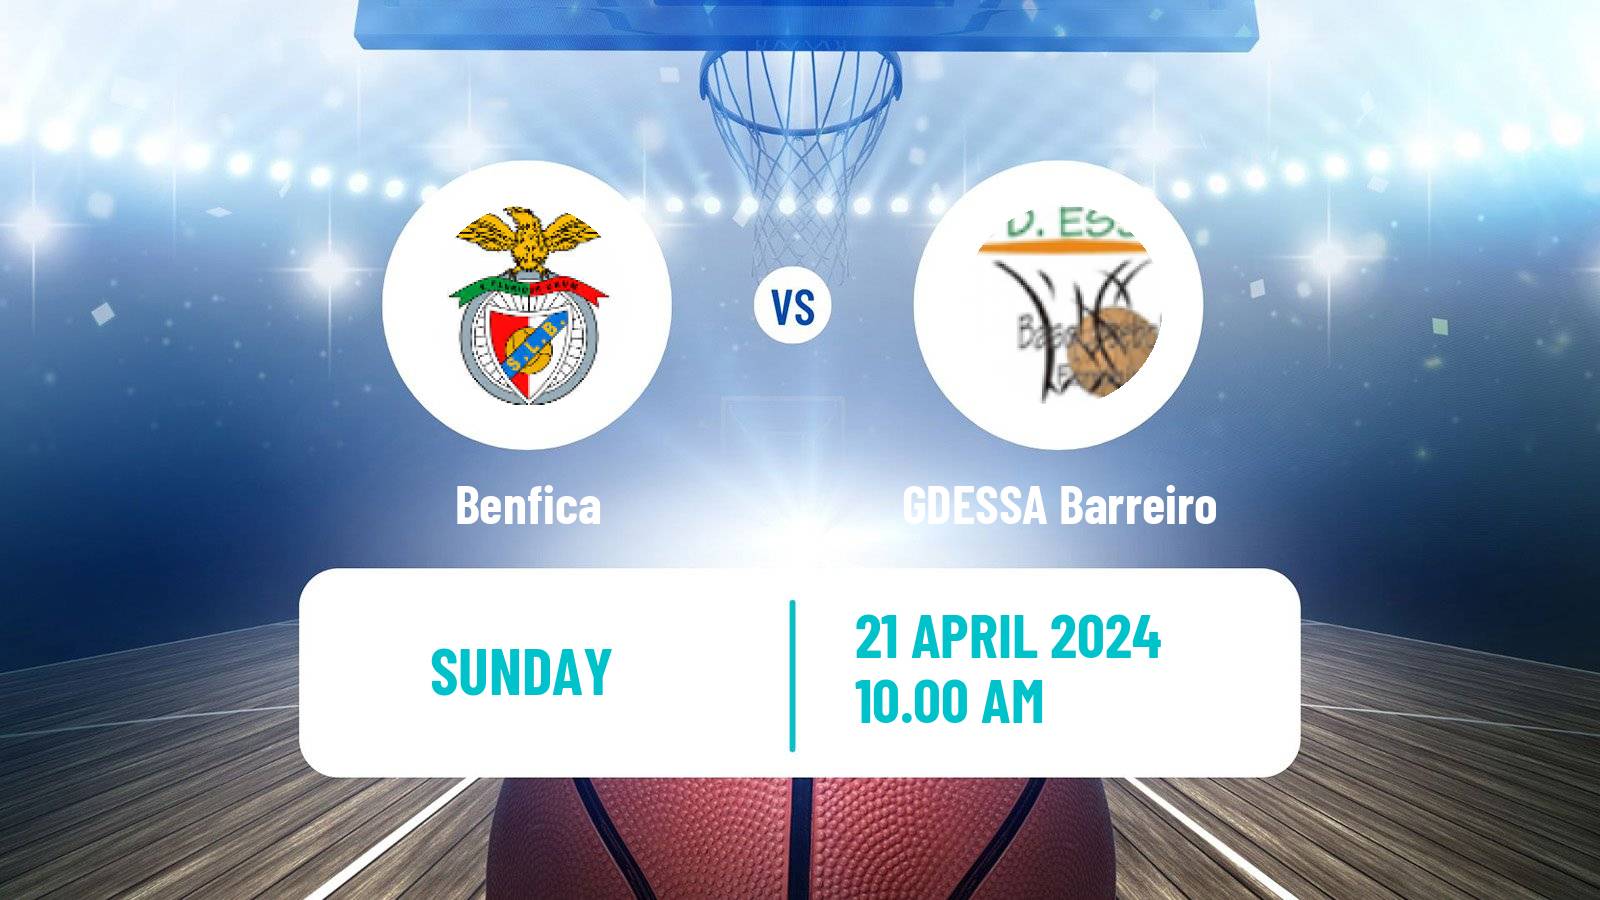 Basketball Portuguese LFB Benfica - GDESSA Barreiro